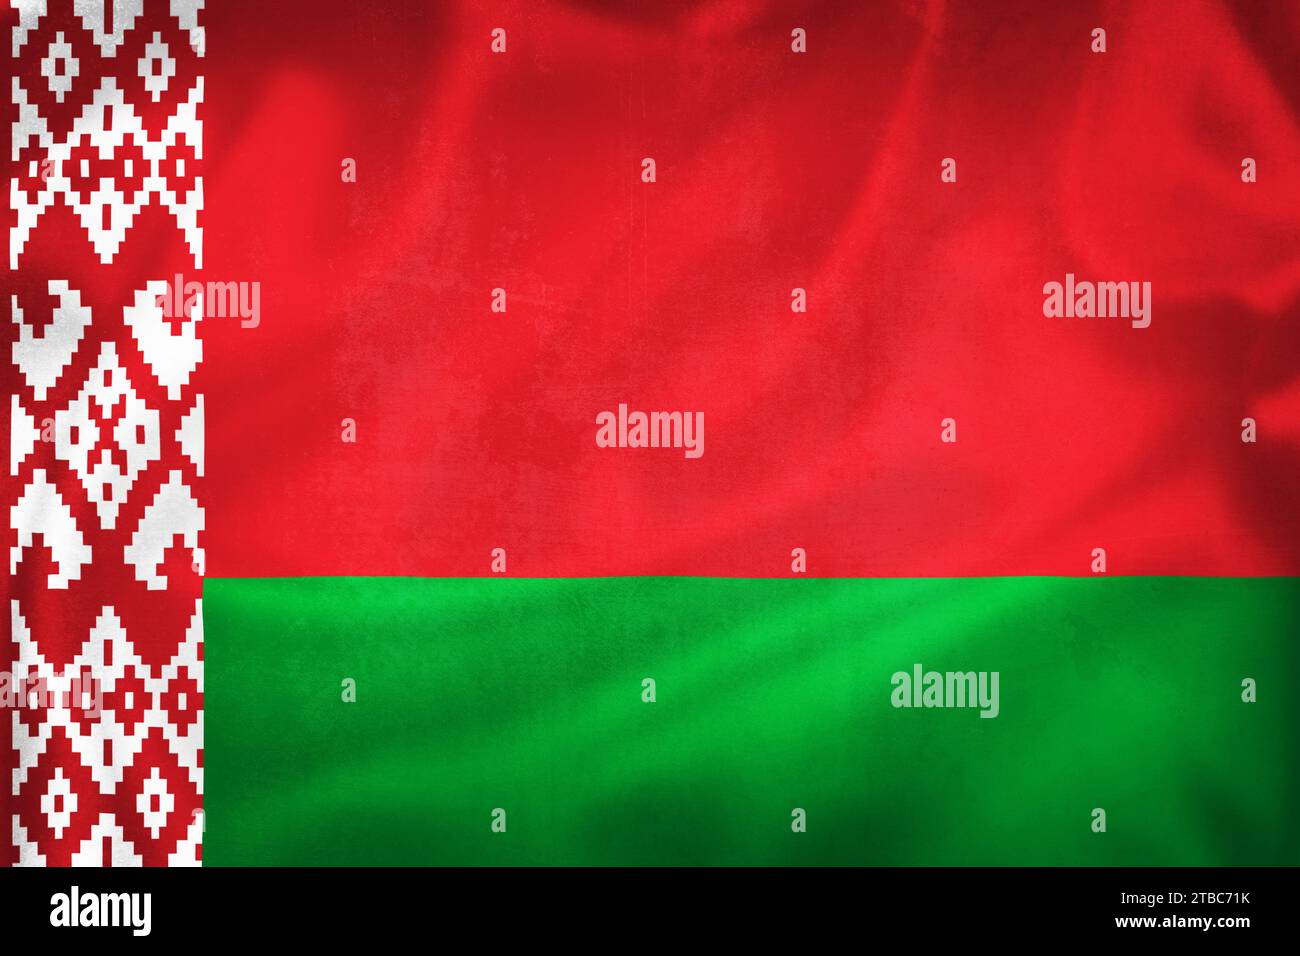 Grunge 3D illustration of Belarus flag, concept of Belarus Stock Photo